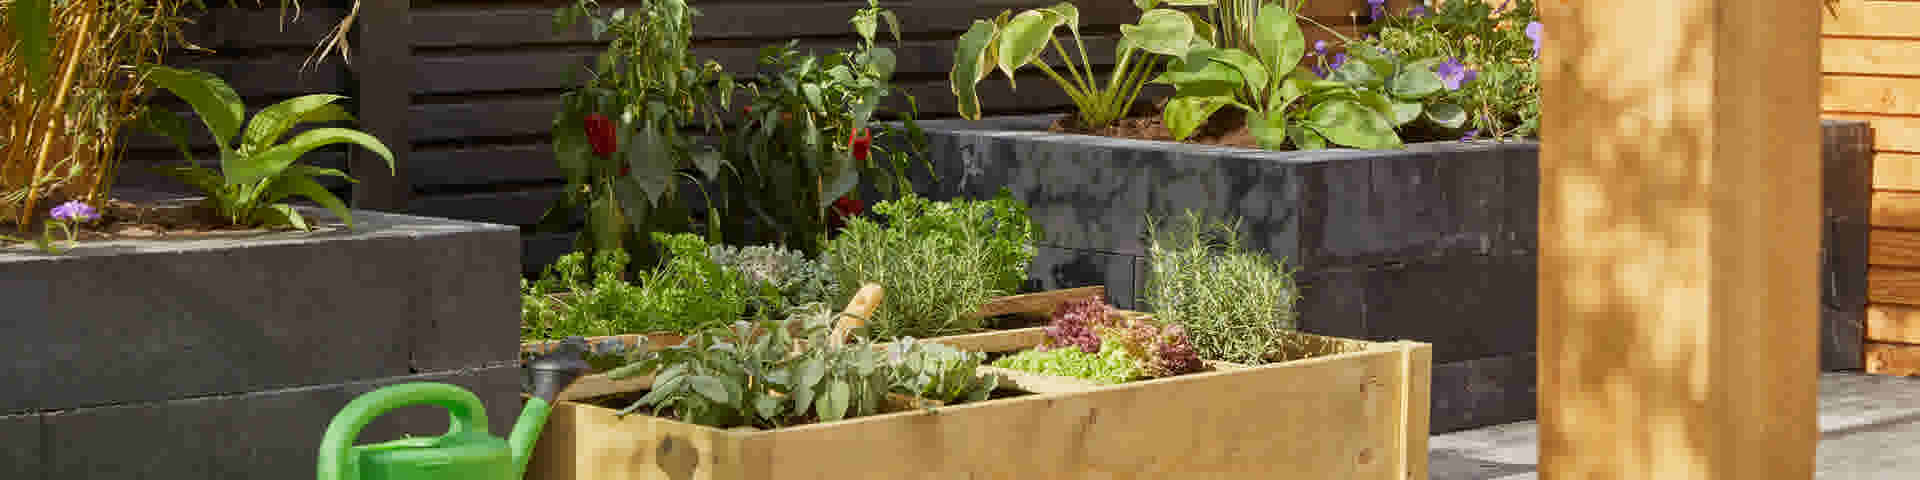 5 tips voor een duurzame tuin